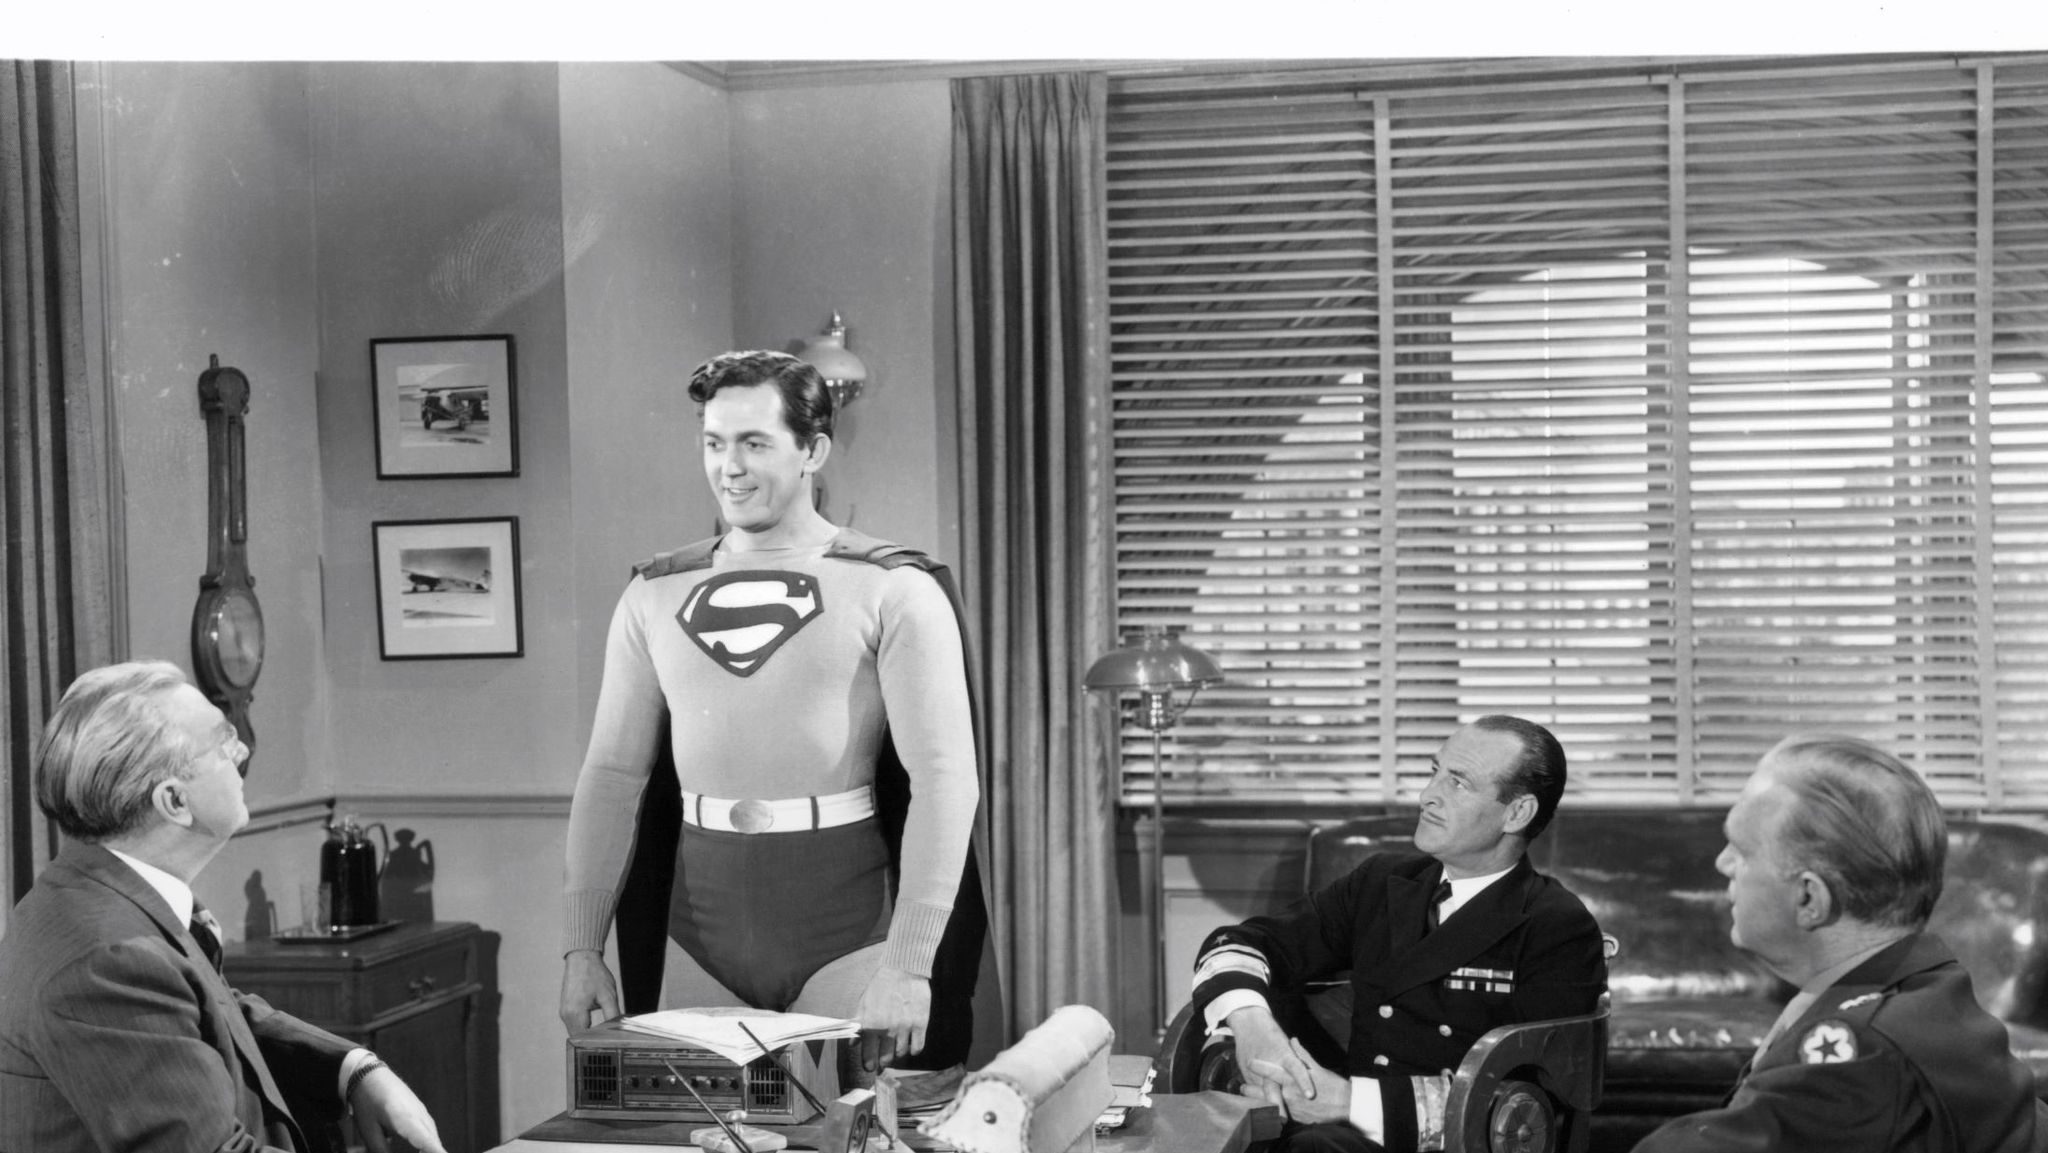 kirk alyn caracterizado como superman en una reunión de trabajo